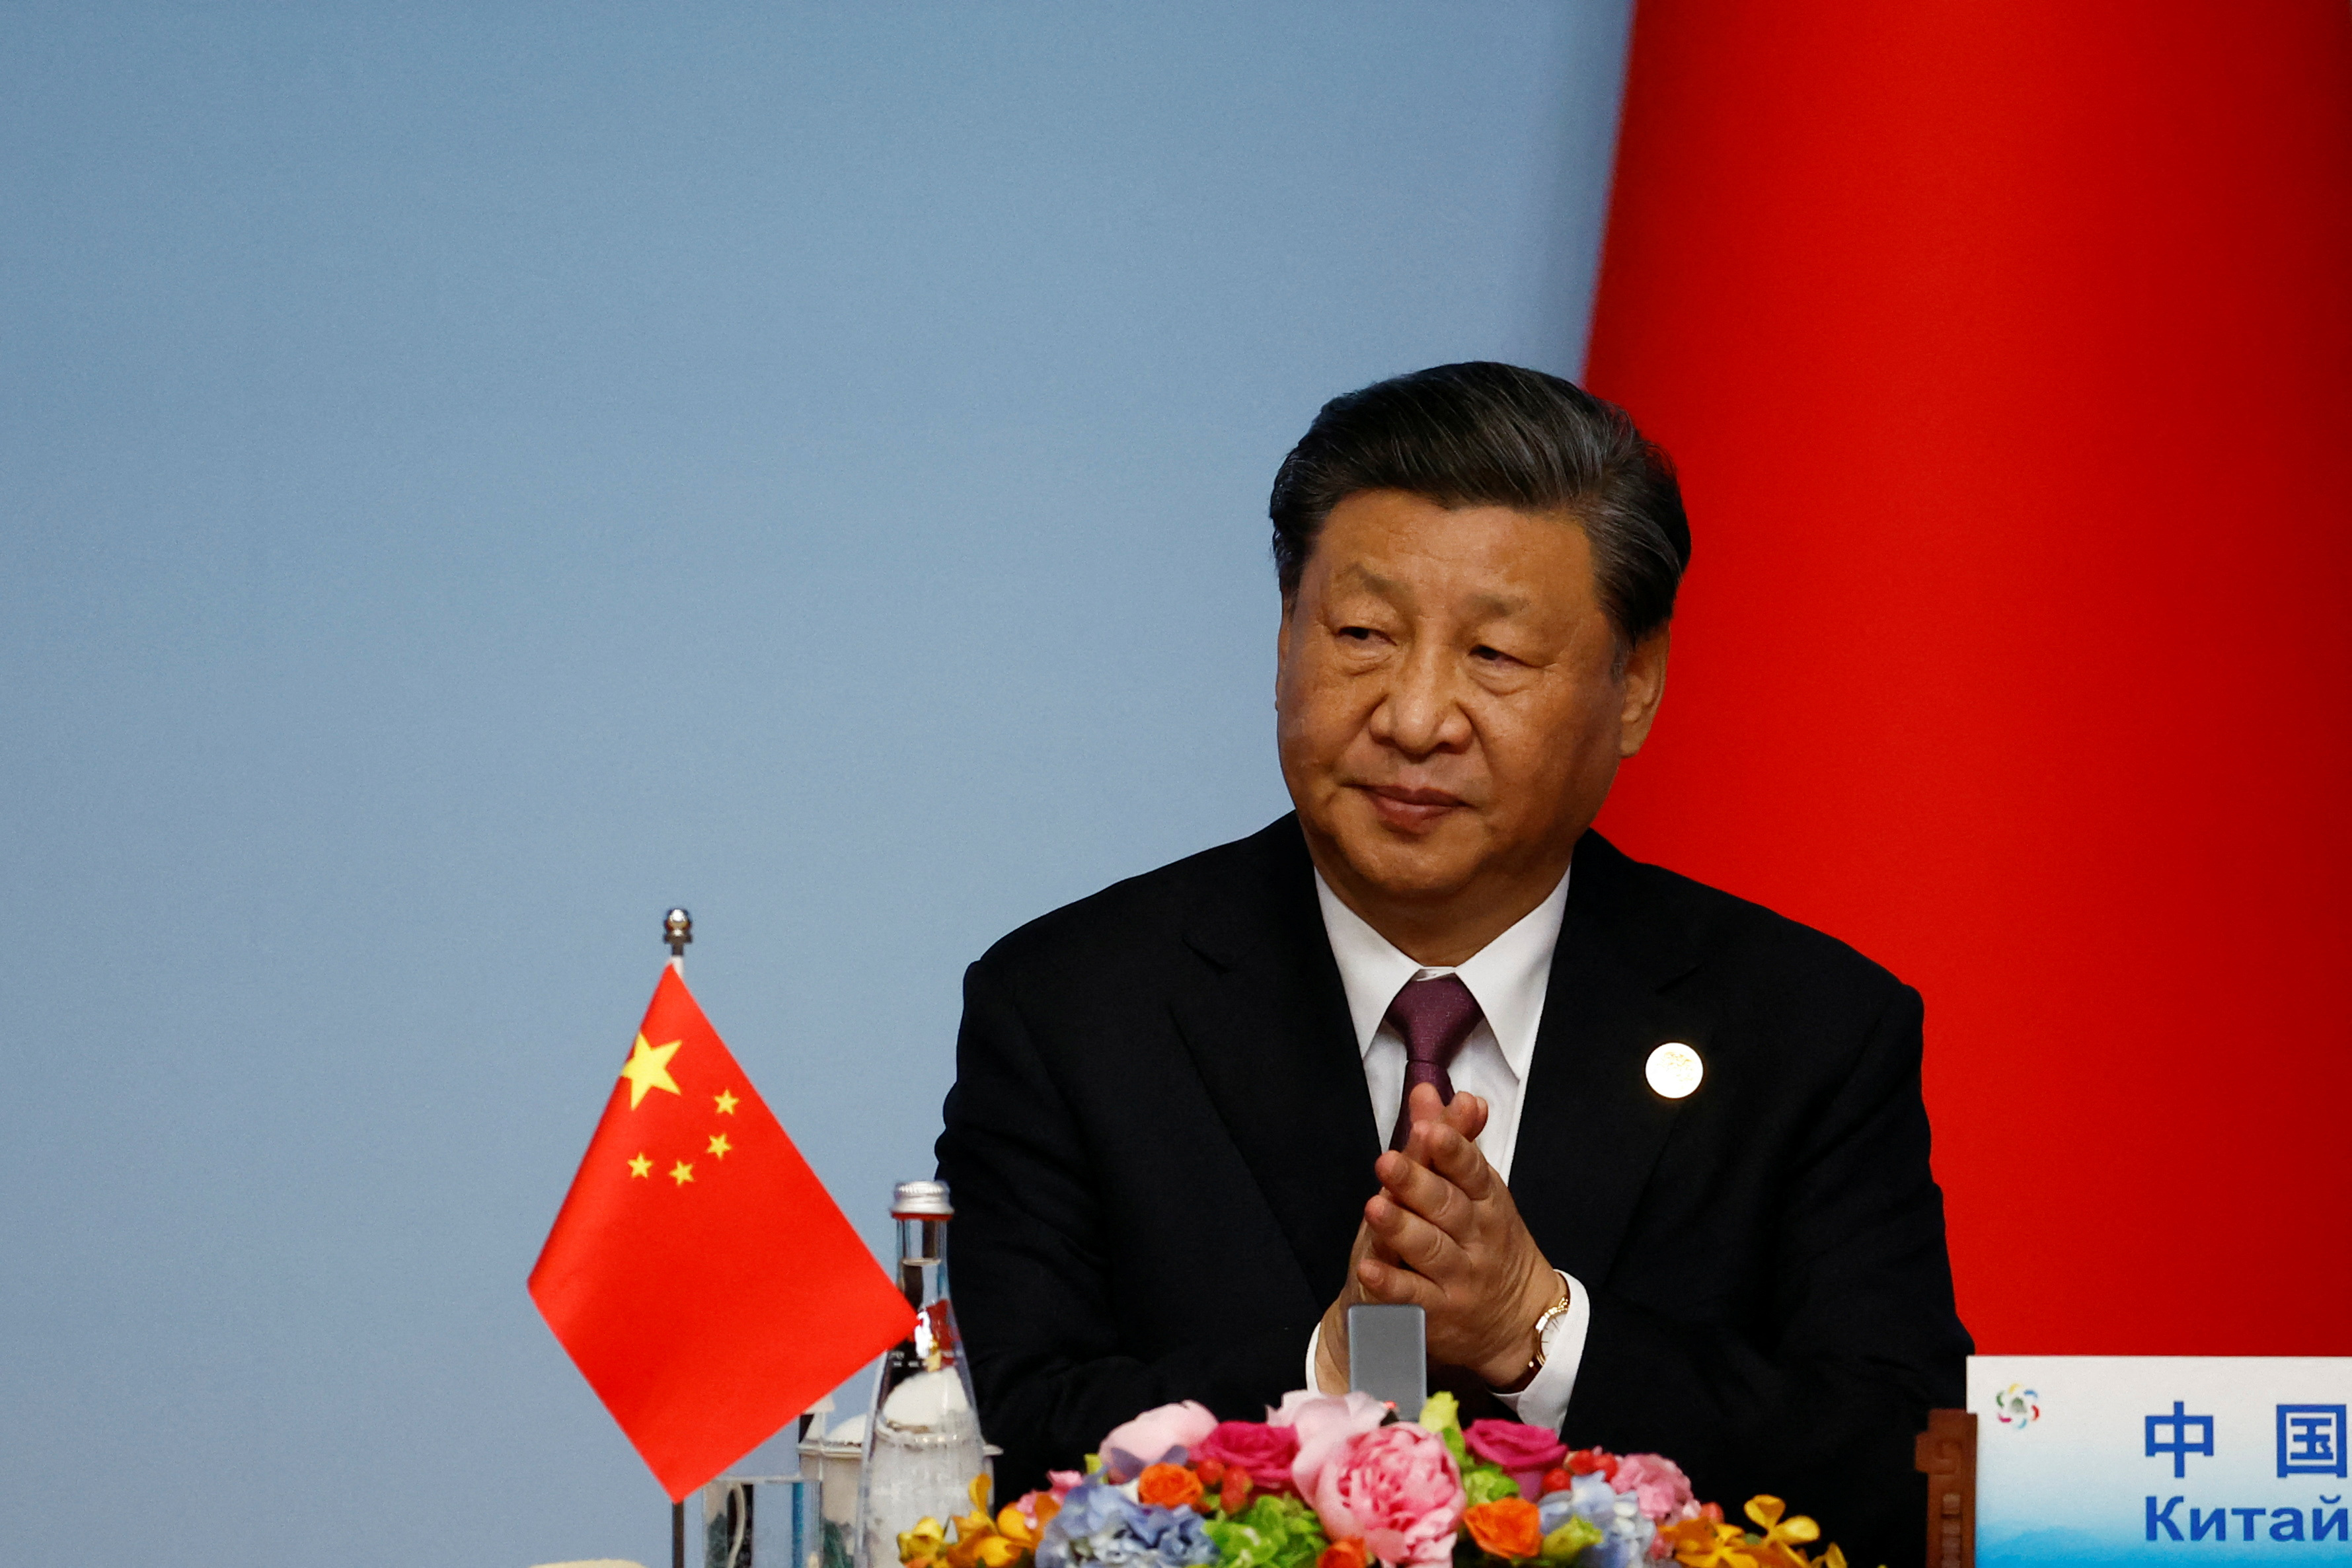 El jefe del régimen chino Xi Jinping durante una cumbre entre China y países de centro Asia en Xian, Shaanxi el pasado 19 de mayo (Reuters)